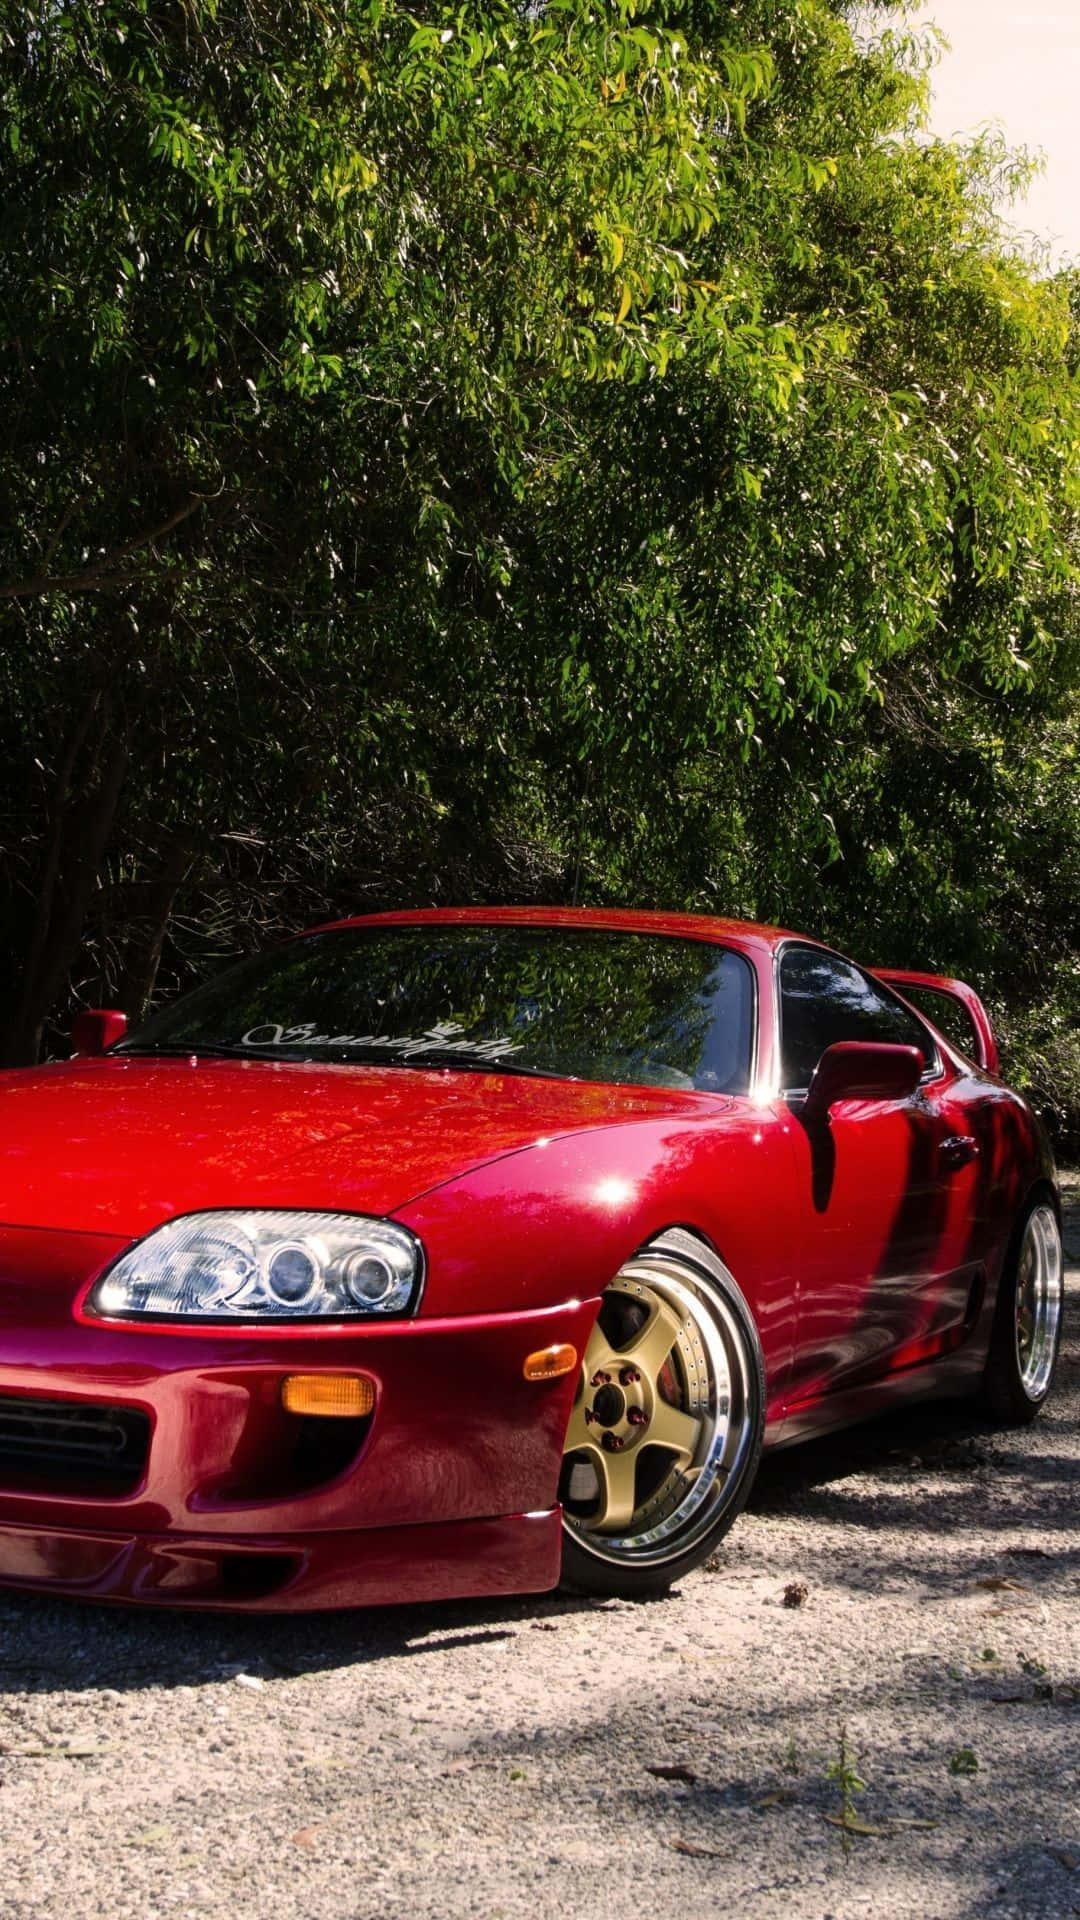 Se på slagene af den smukke røde bil! Wallpaper